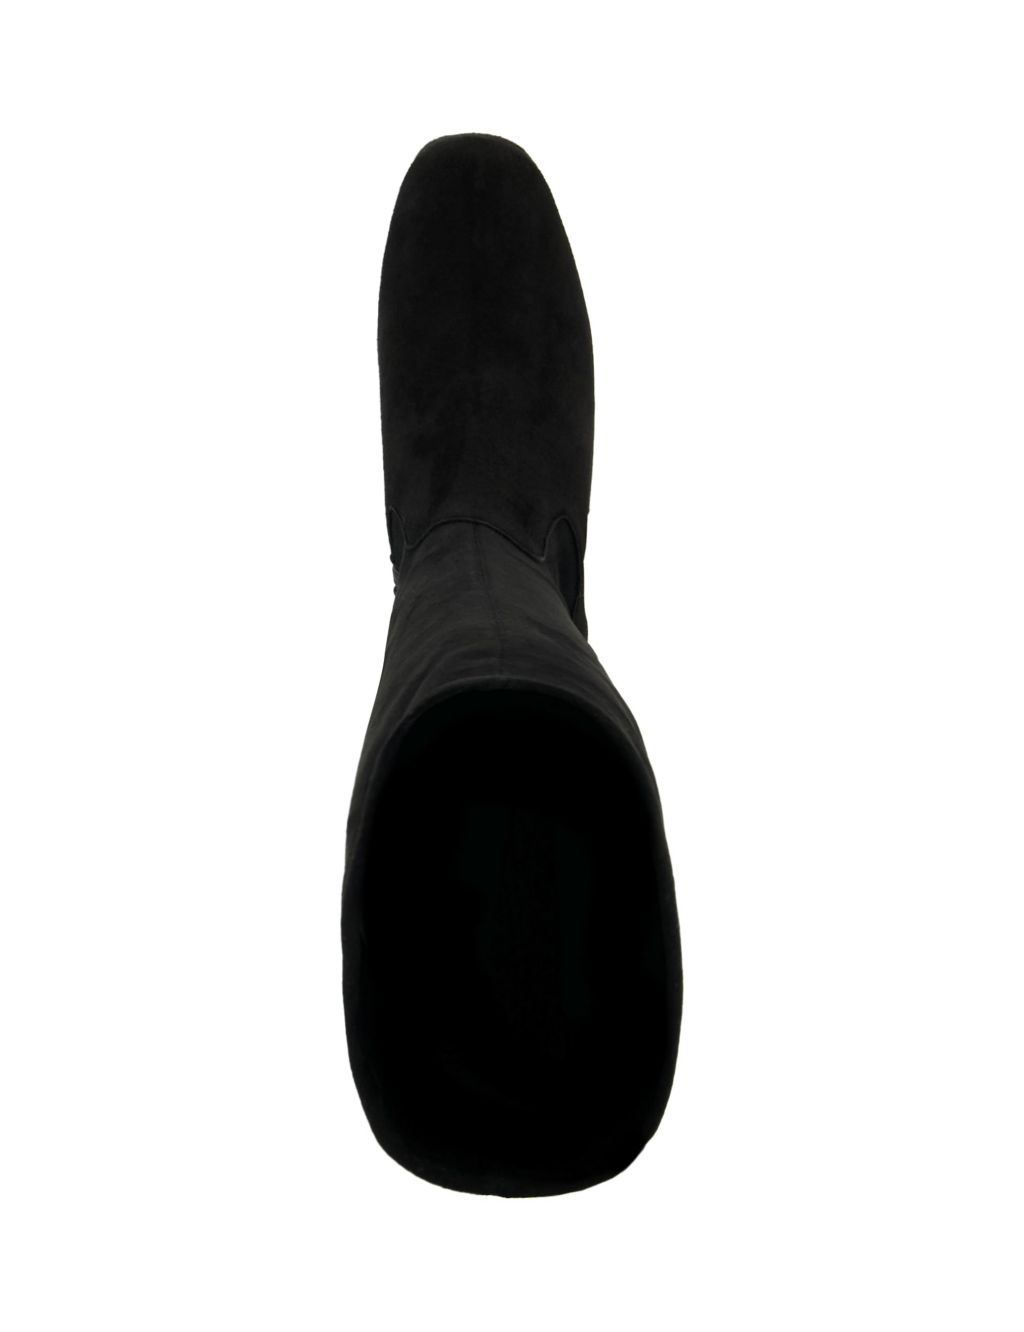 Platform Block Heel Knee High Boots | Dune London | M&S